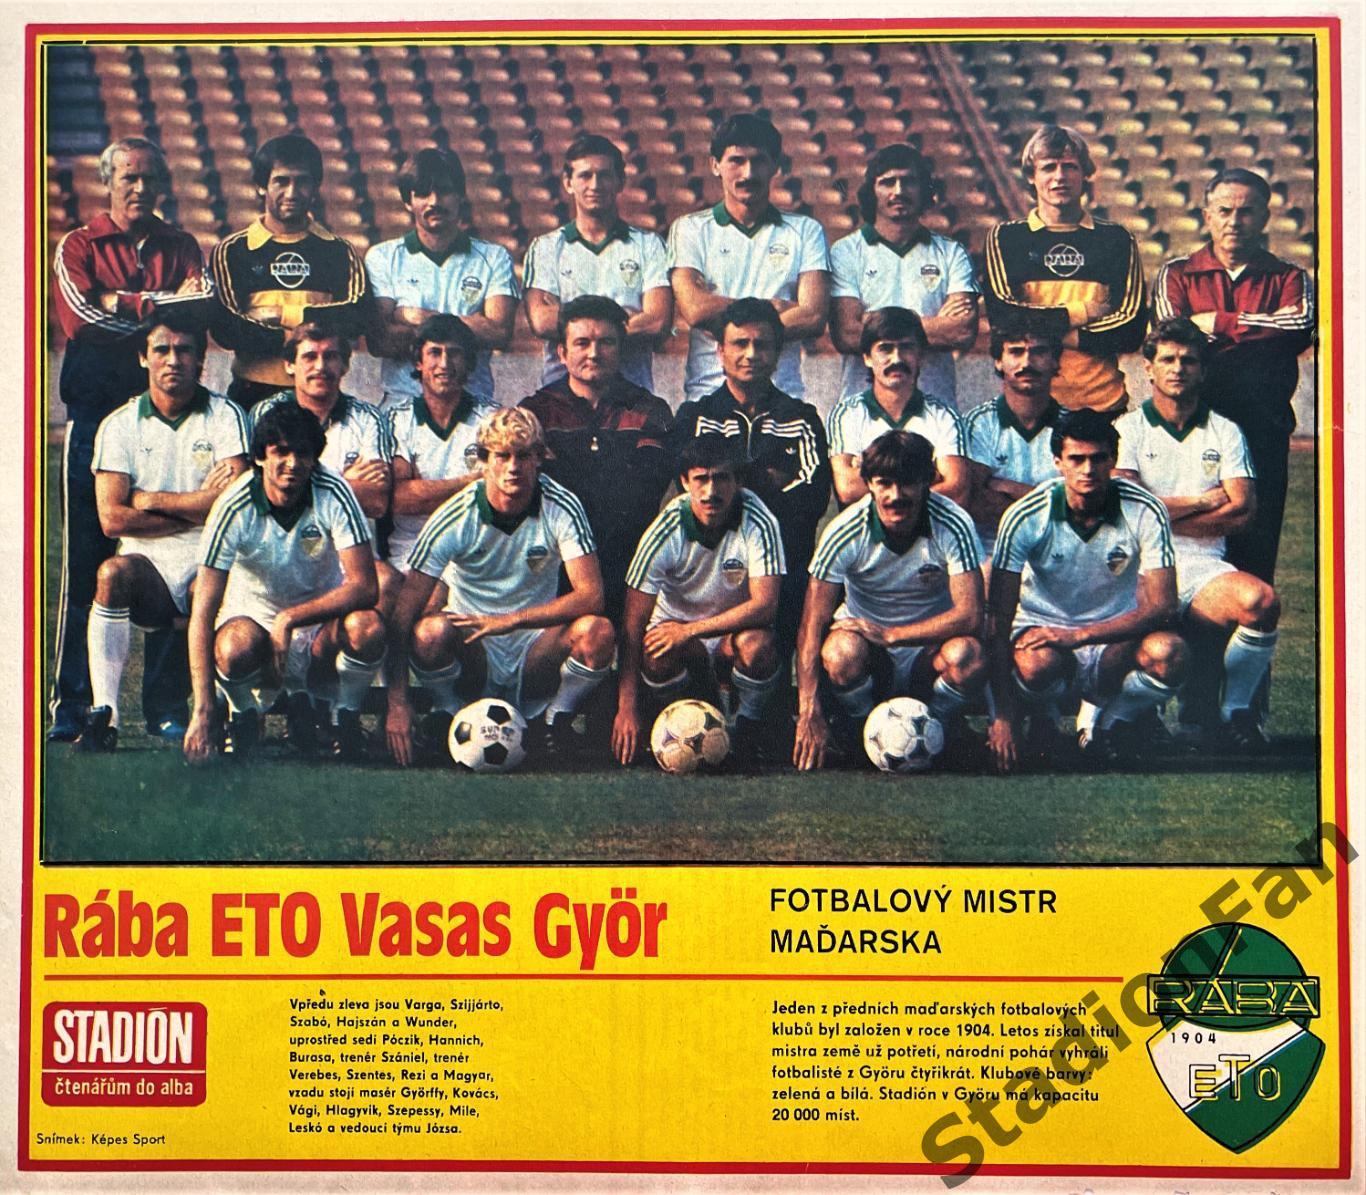 Постер из журнала Stadion (Стадион) - Raba ETO Vasas, 1983.